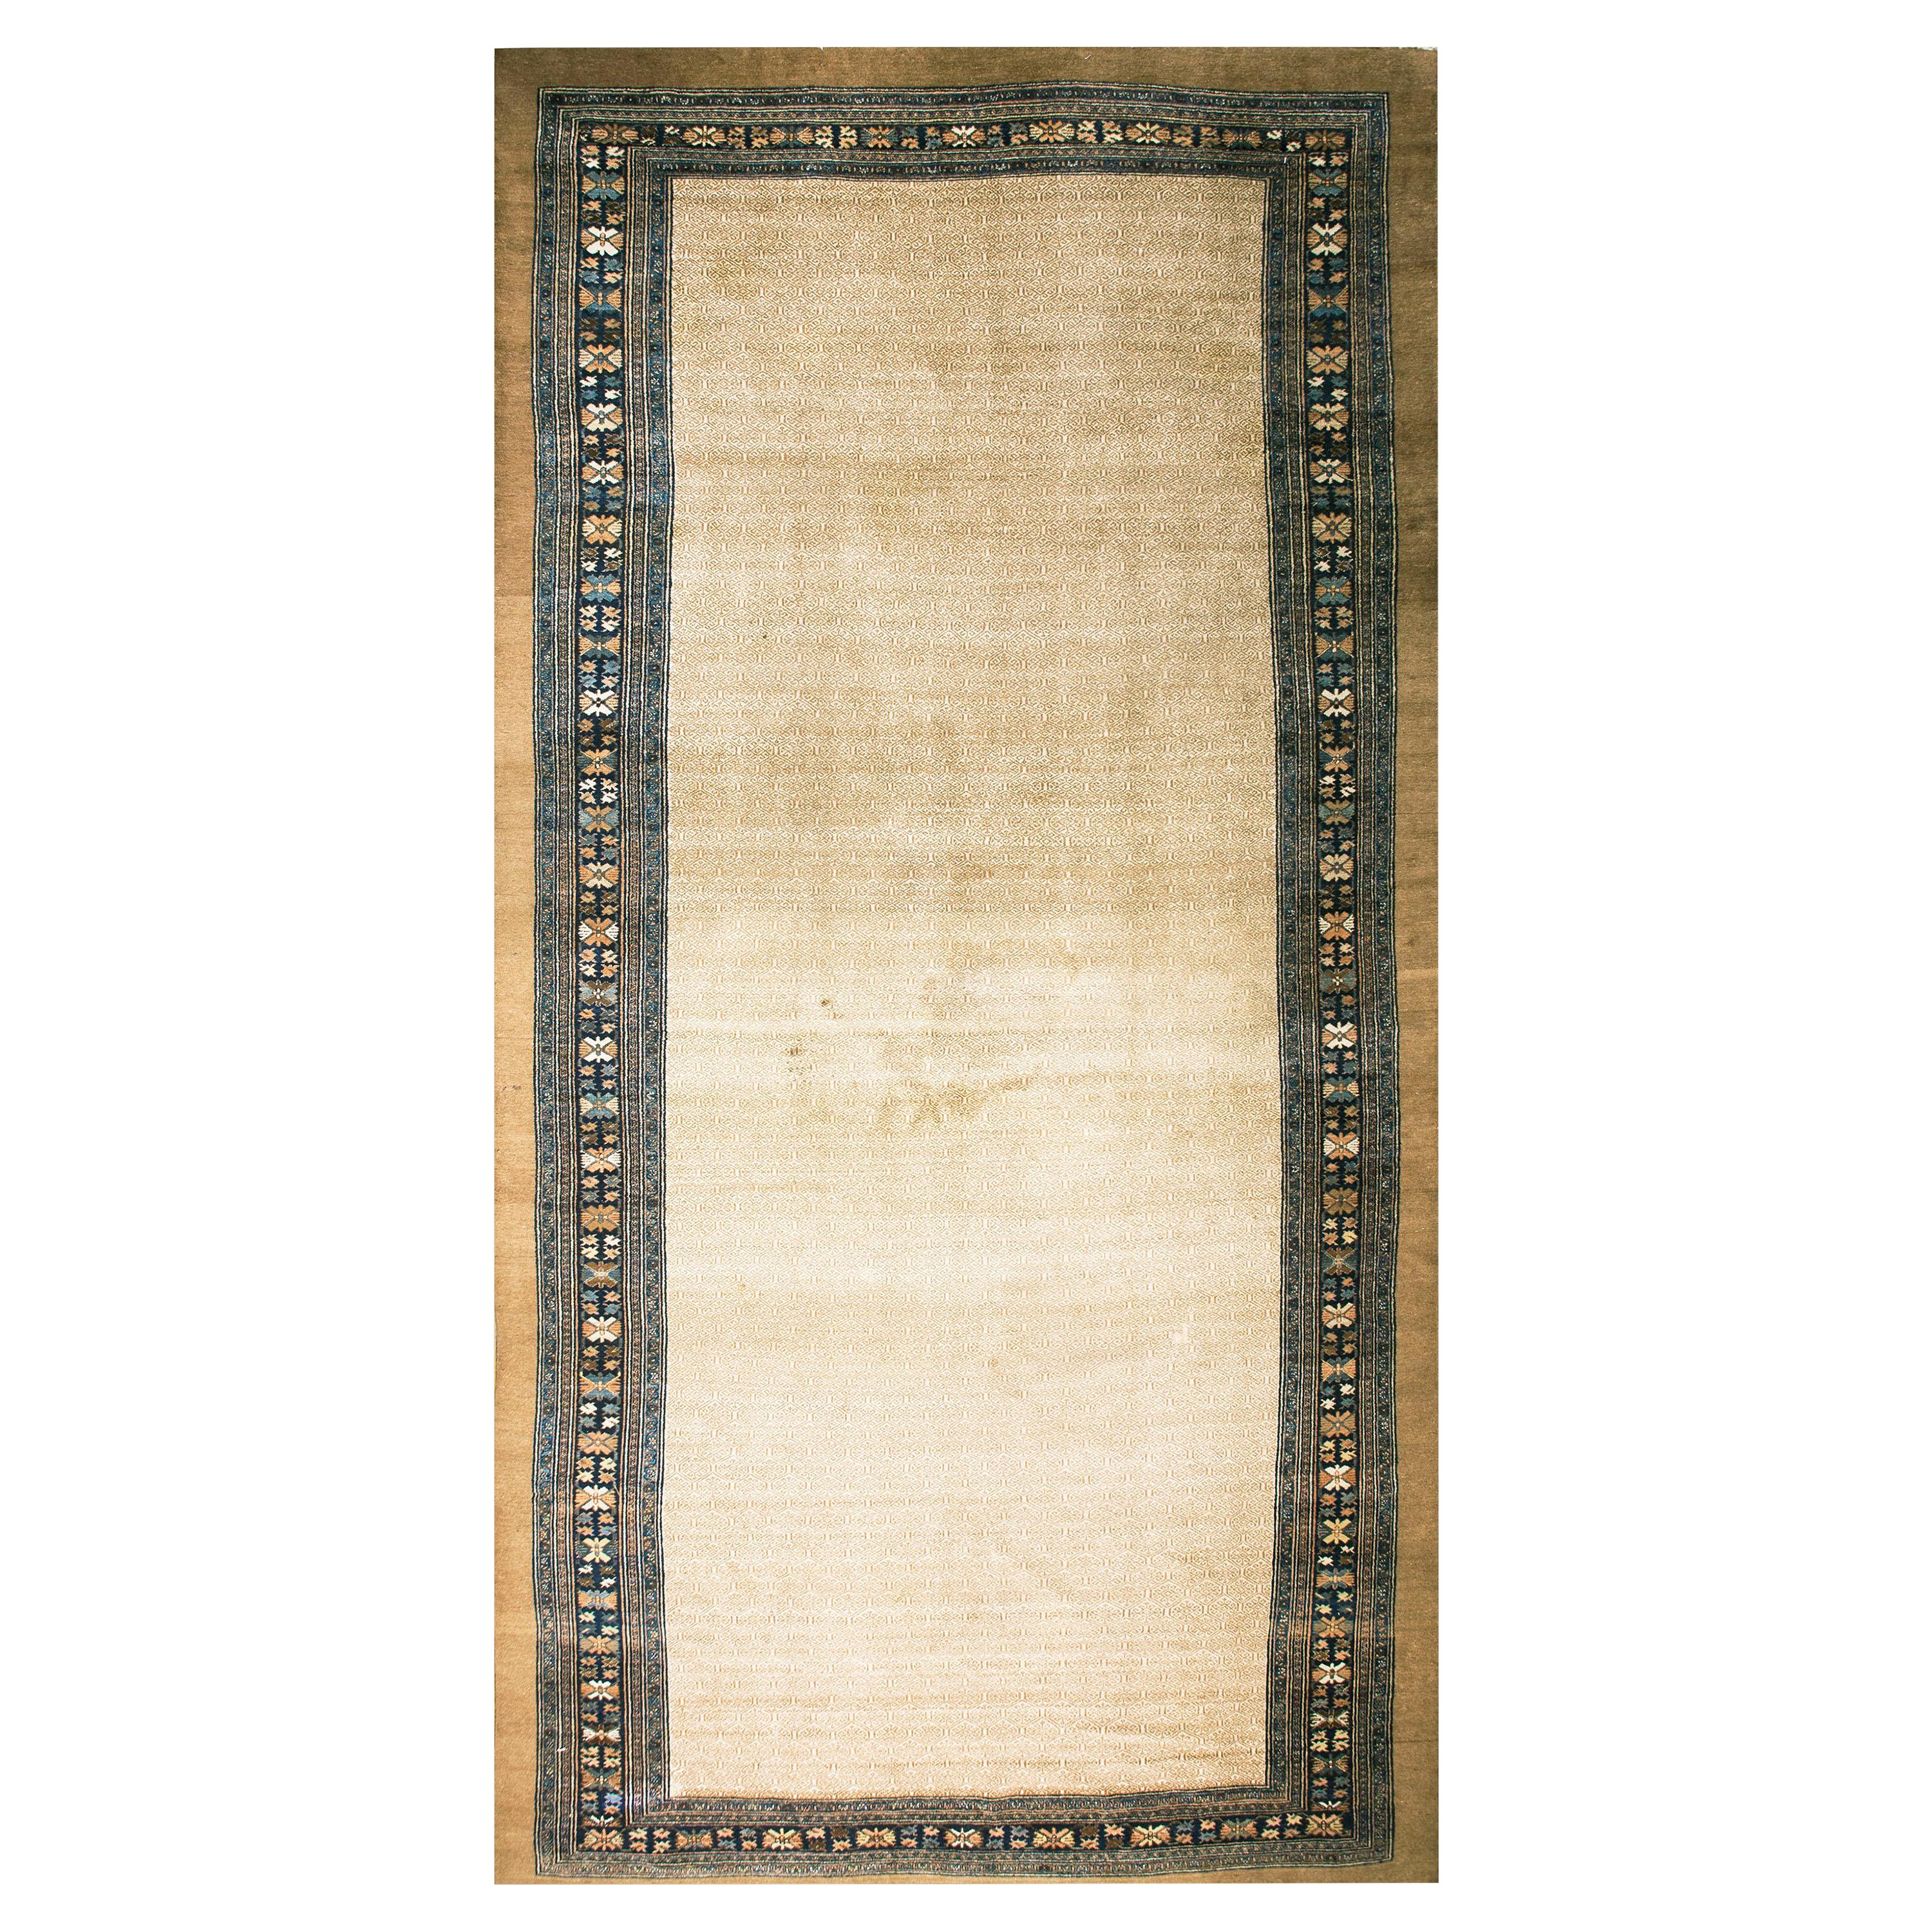 19. Jahrhundert W. Persischer Serab Teppich ( 11'3" x 22'6" - 343 x 686 )